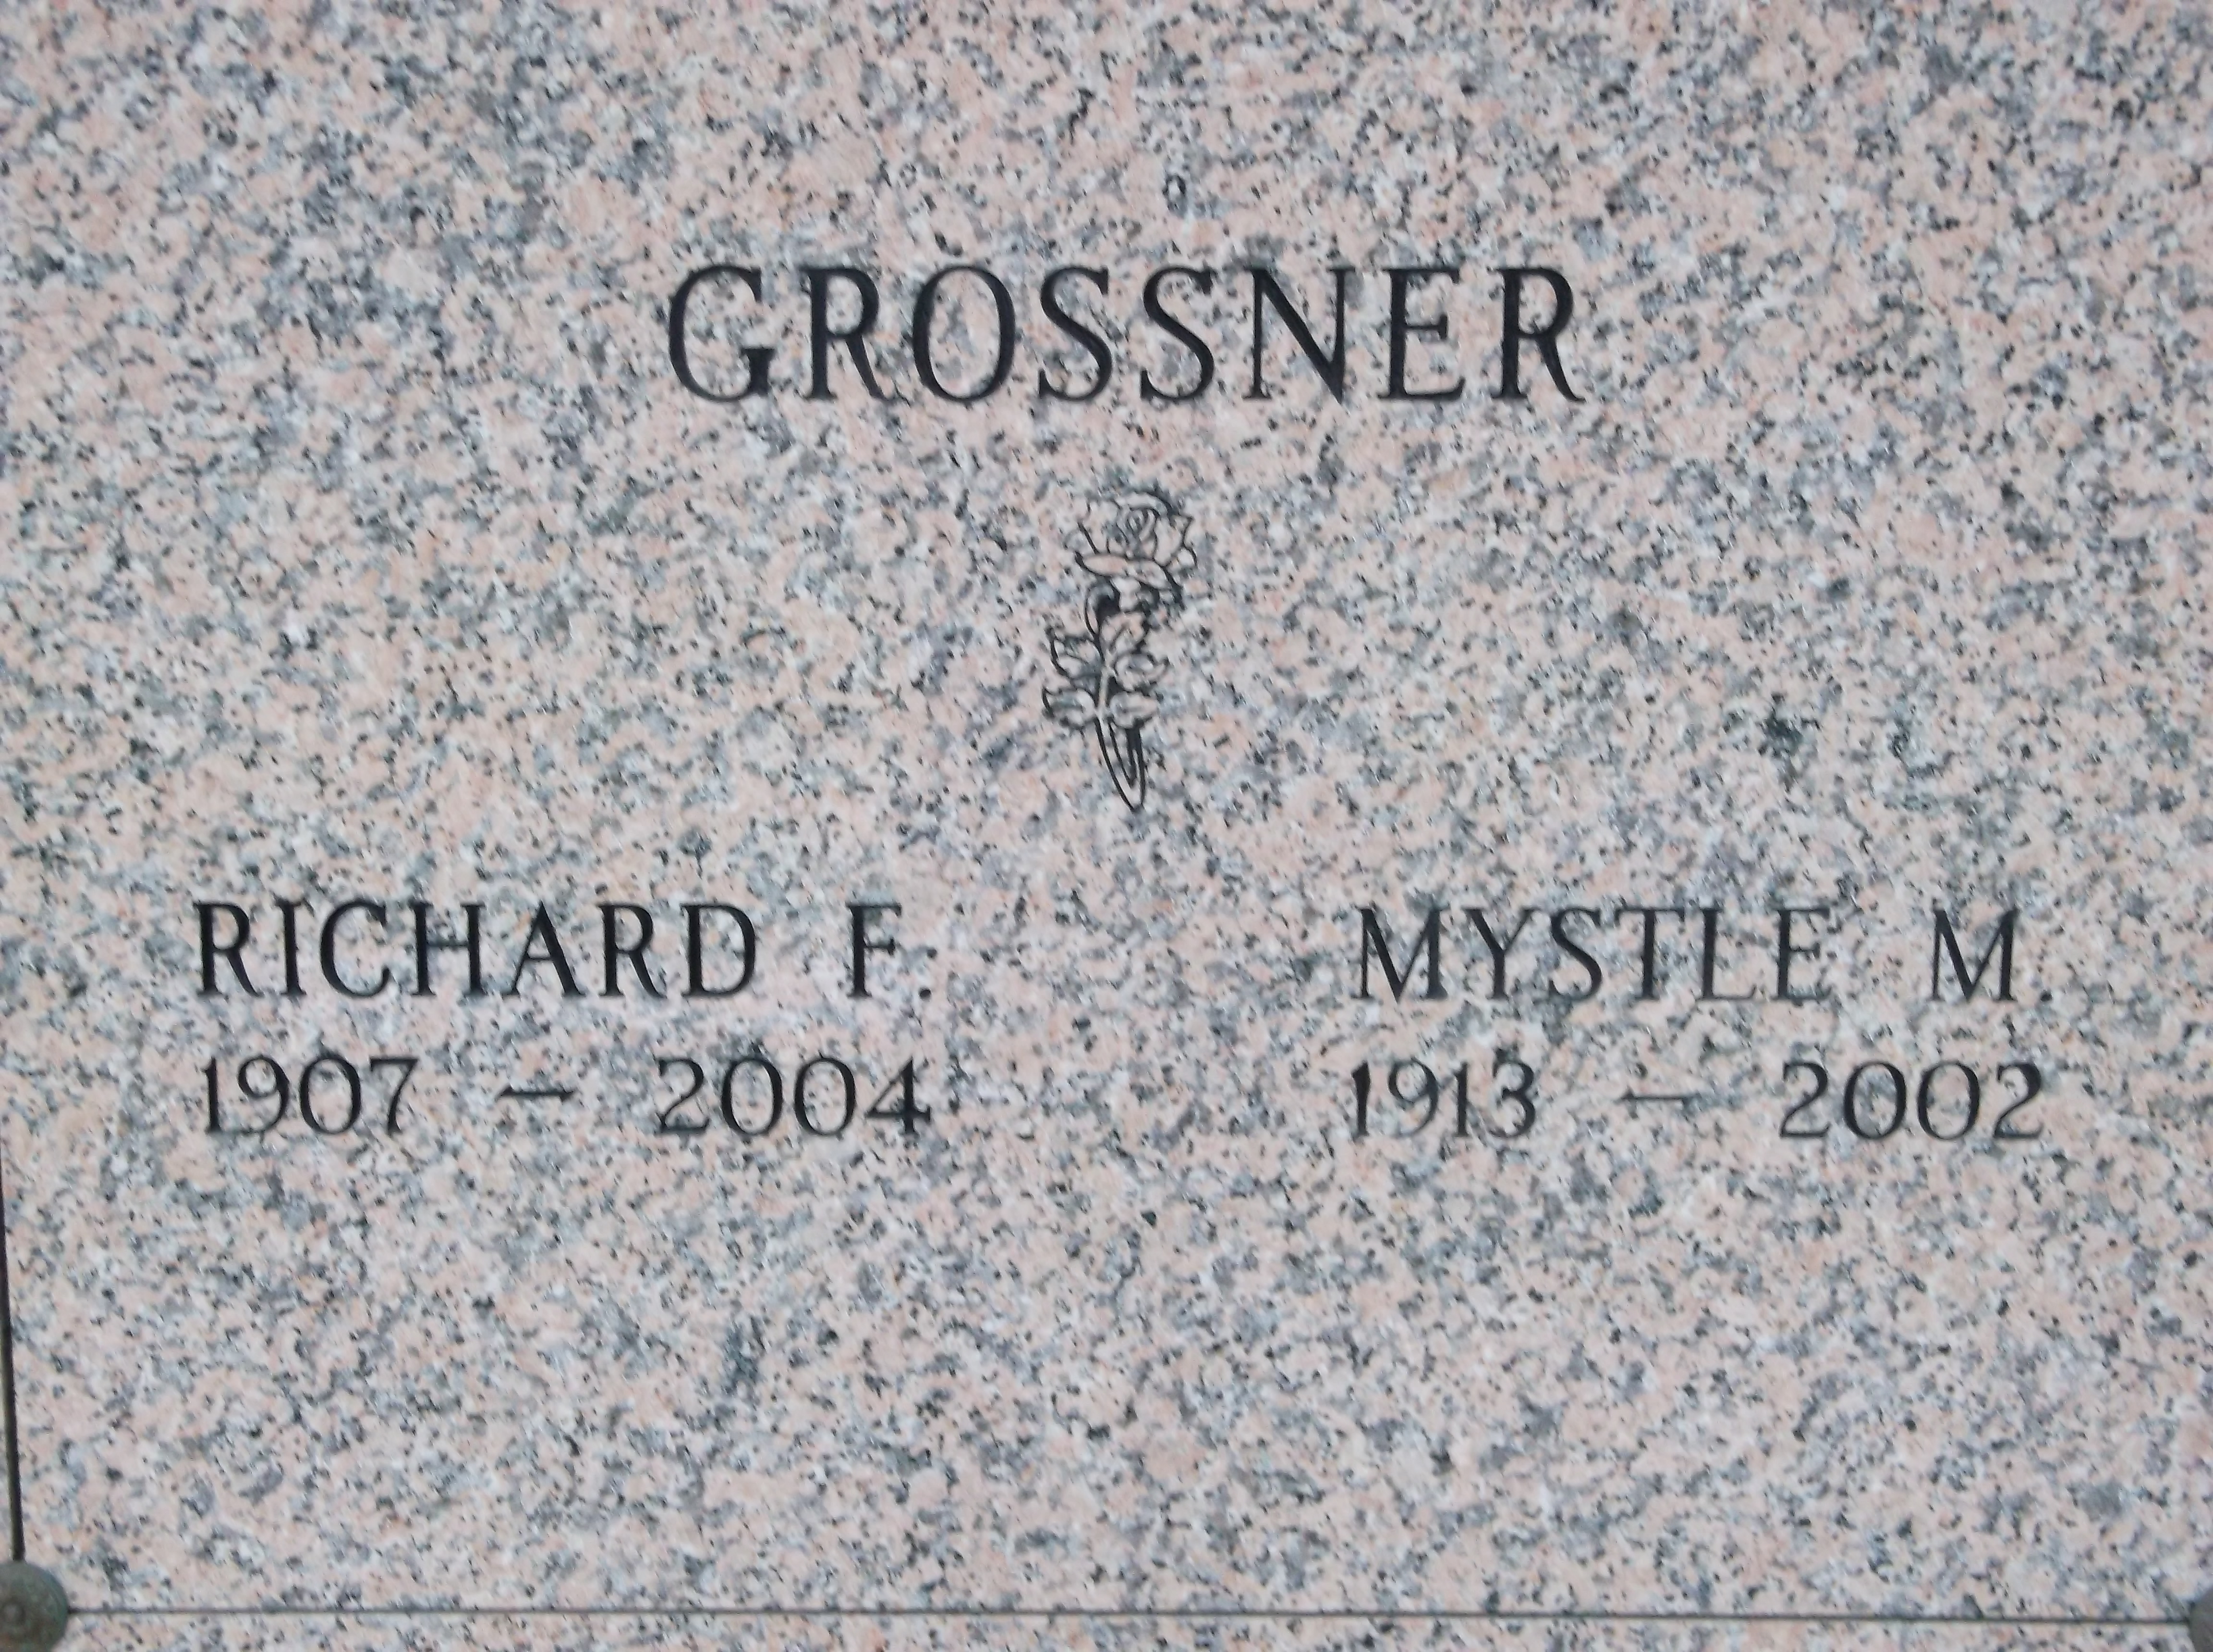 Mystle M Grossner